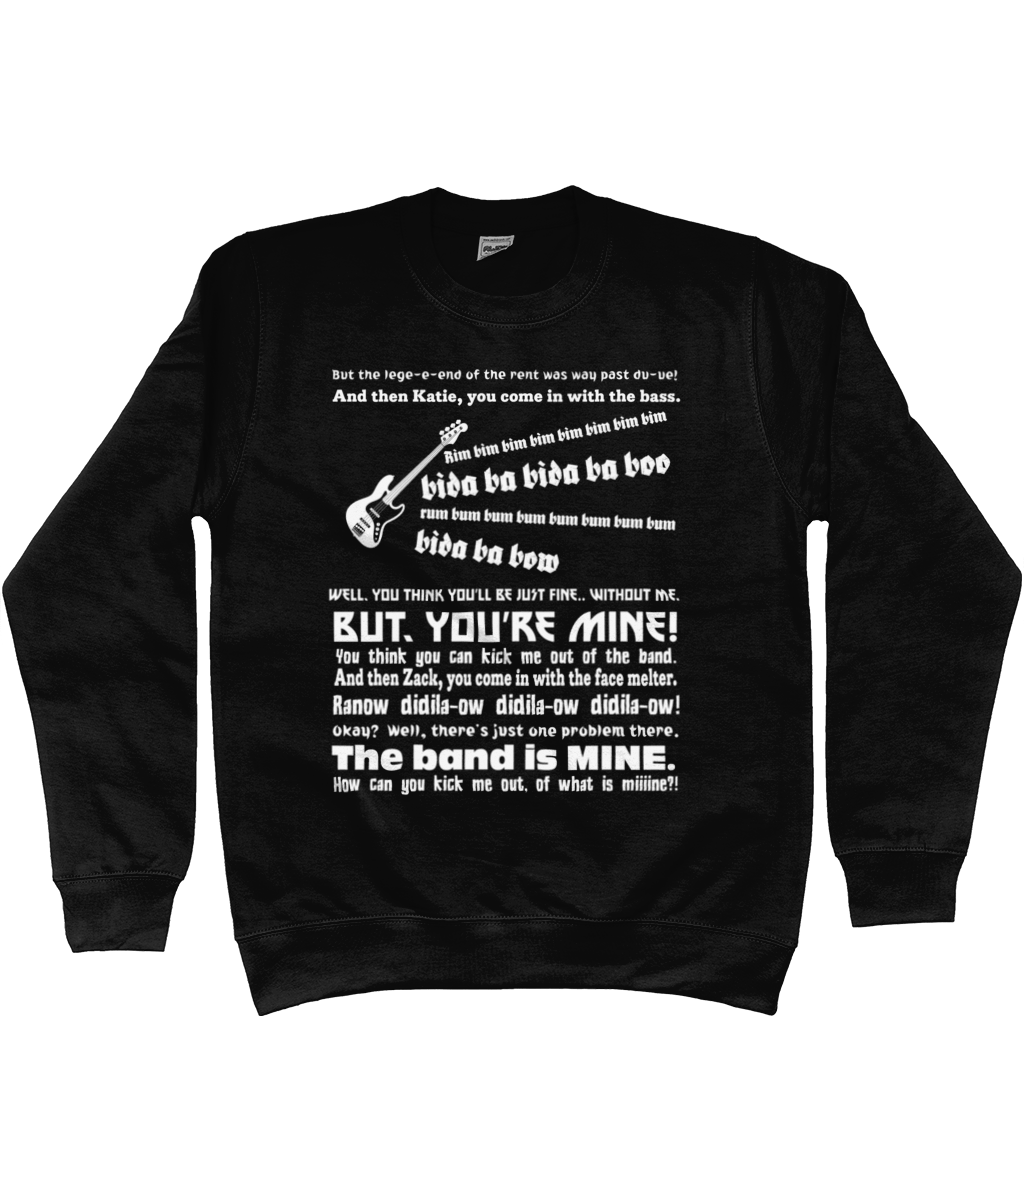 The Legend of The Rent Sweatshirt